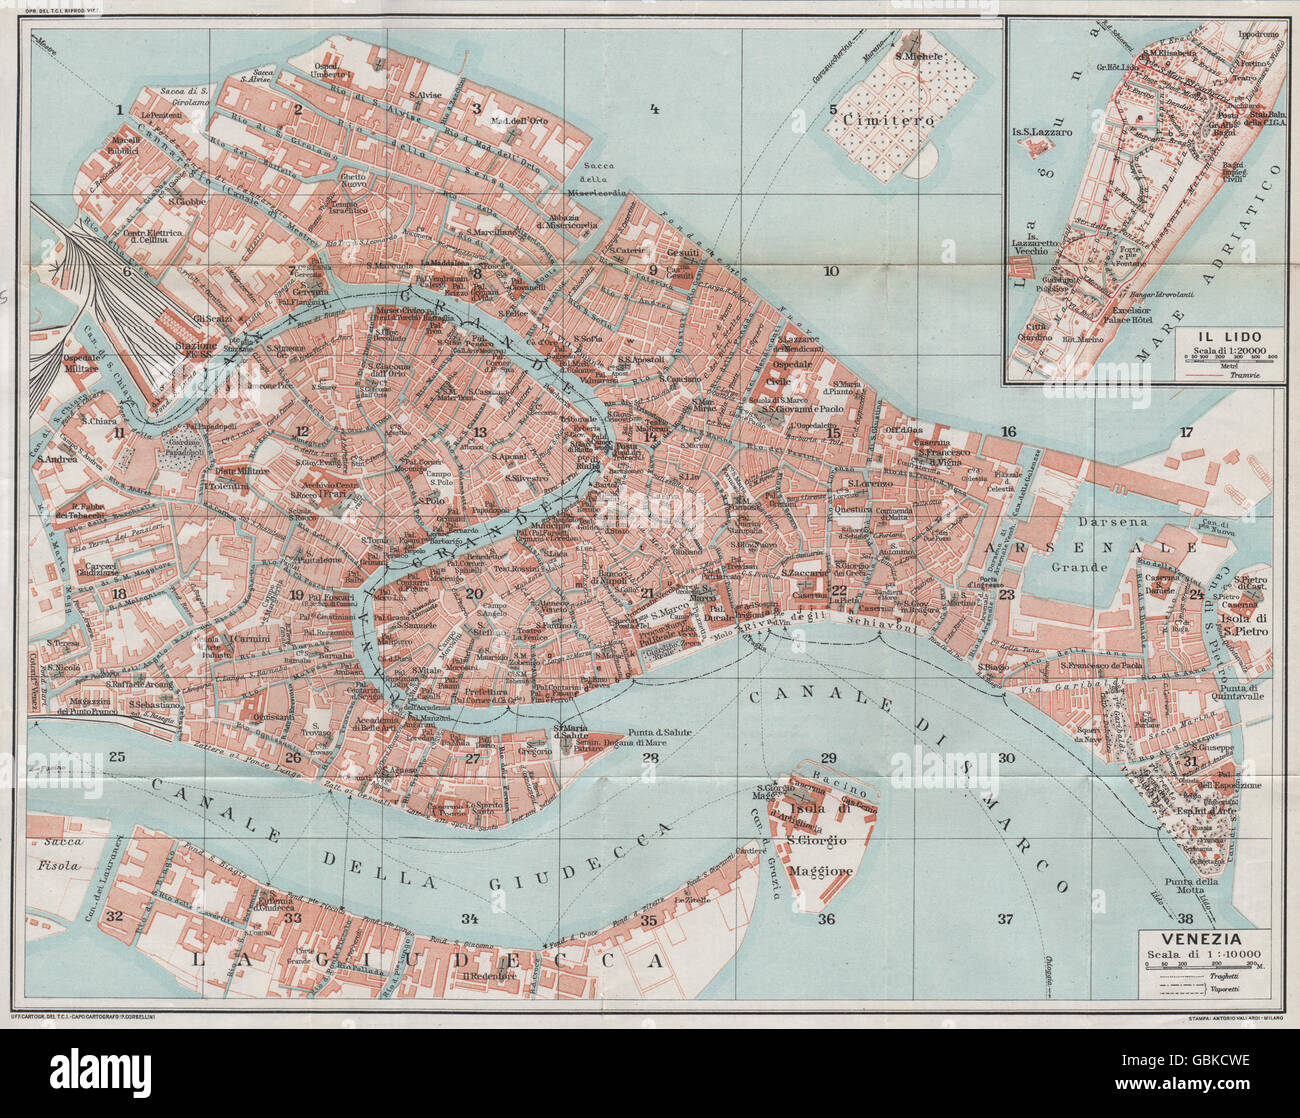 Mappa di venezia immagini e fotografie stock ad alta risoluzione - Alamy